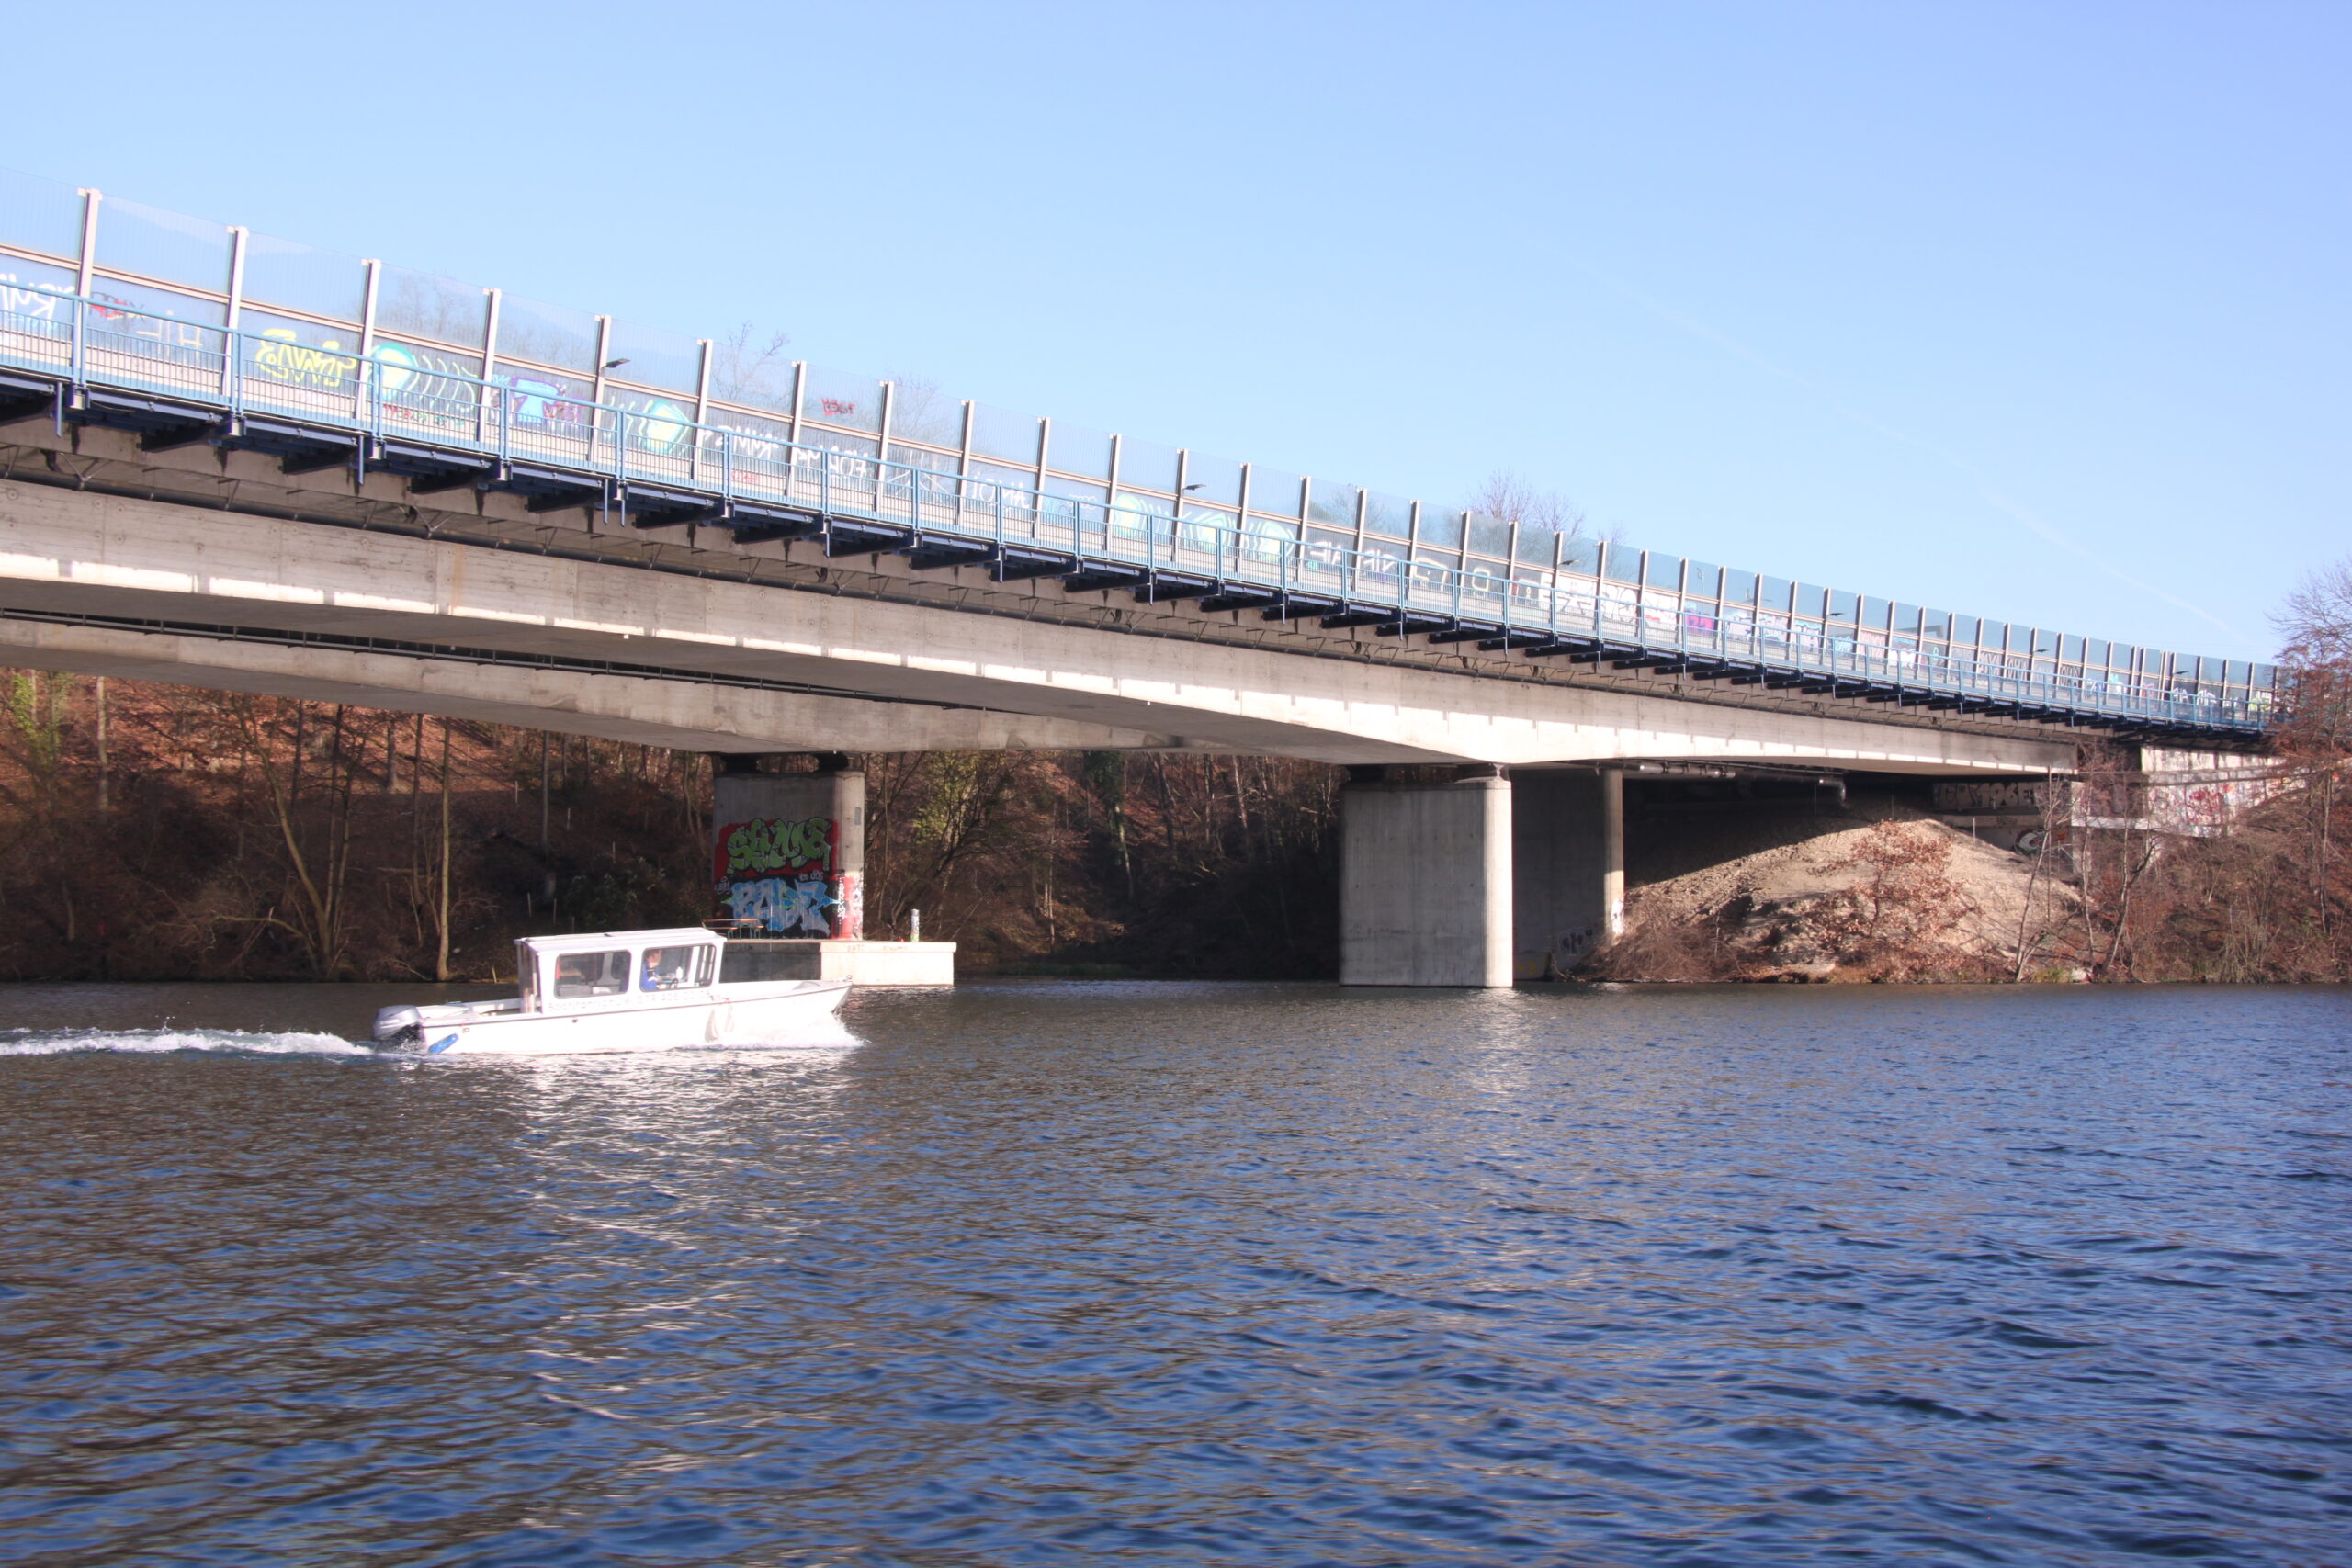 Fahrschulboot bei der Limmatbrücke